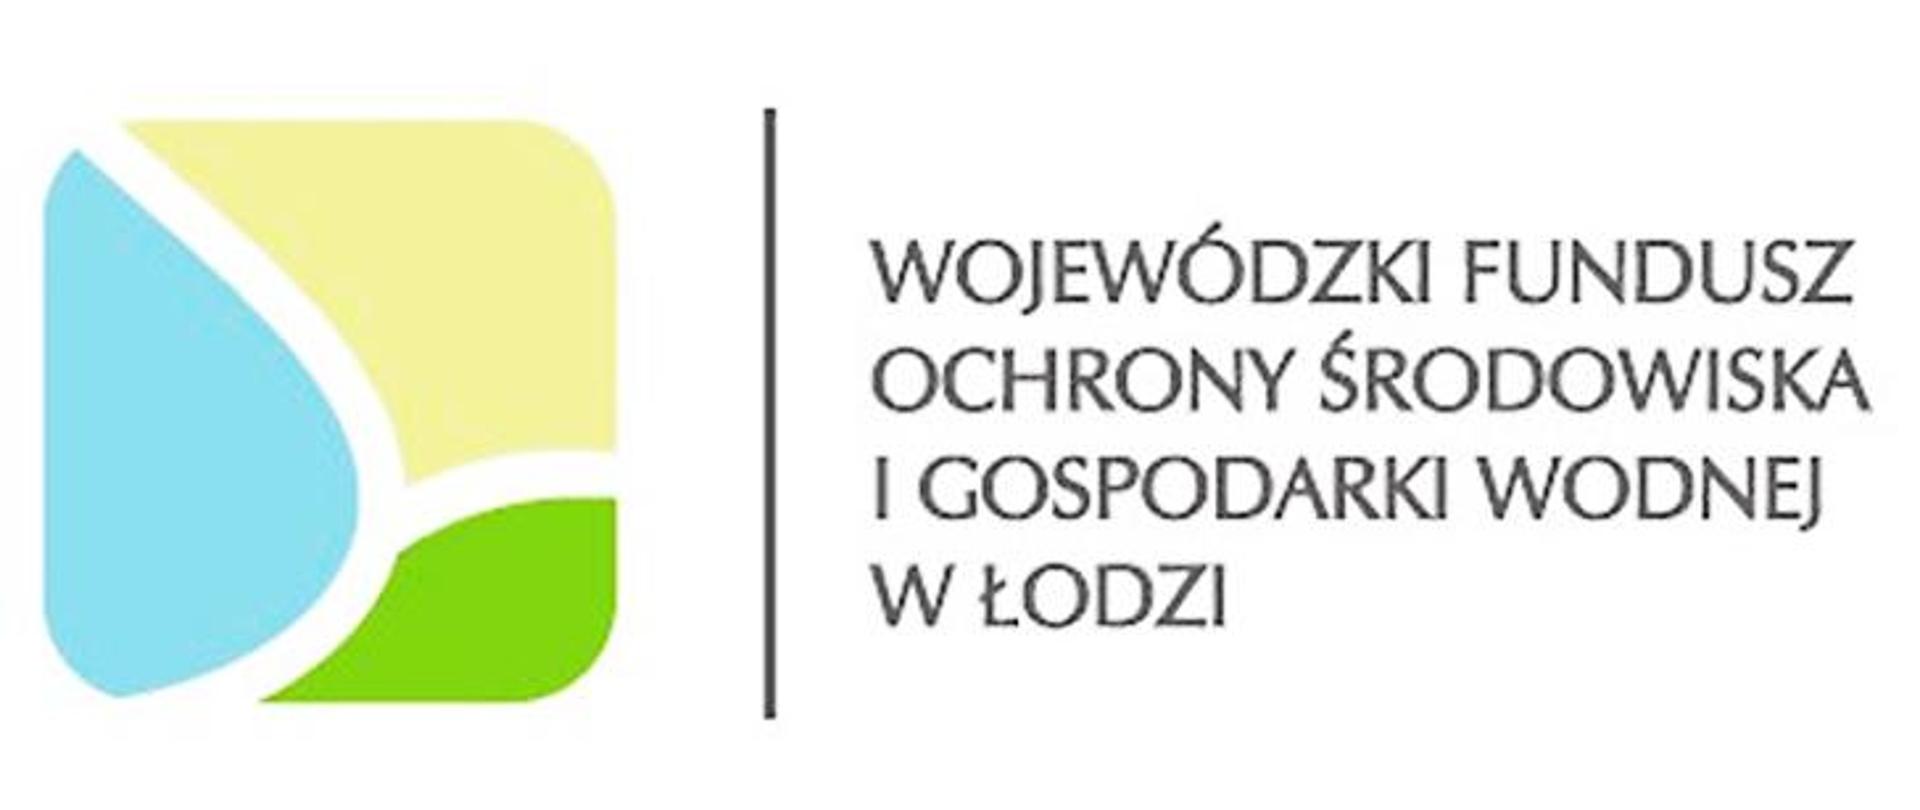 Na białym tle z prawej strony czarny napis Wojewódzki Fundusz Ochrony Środowiska i Gospodarki Wodnej w Łodzi, po lewej stronie logo tego funduszu